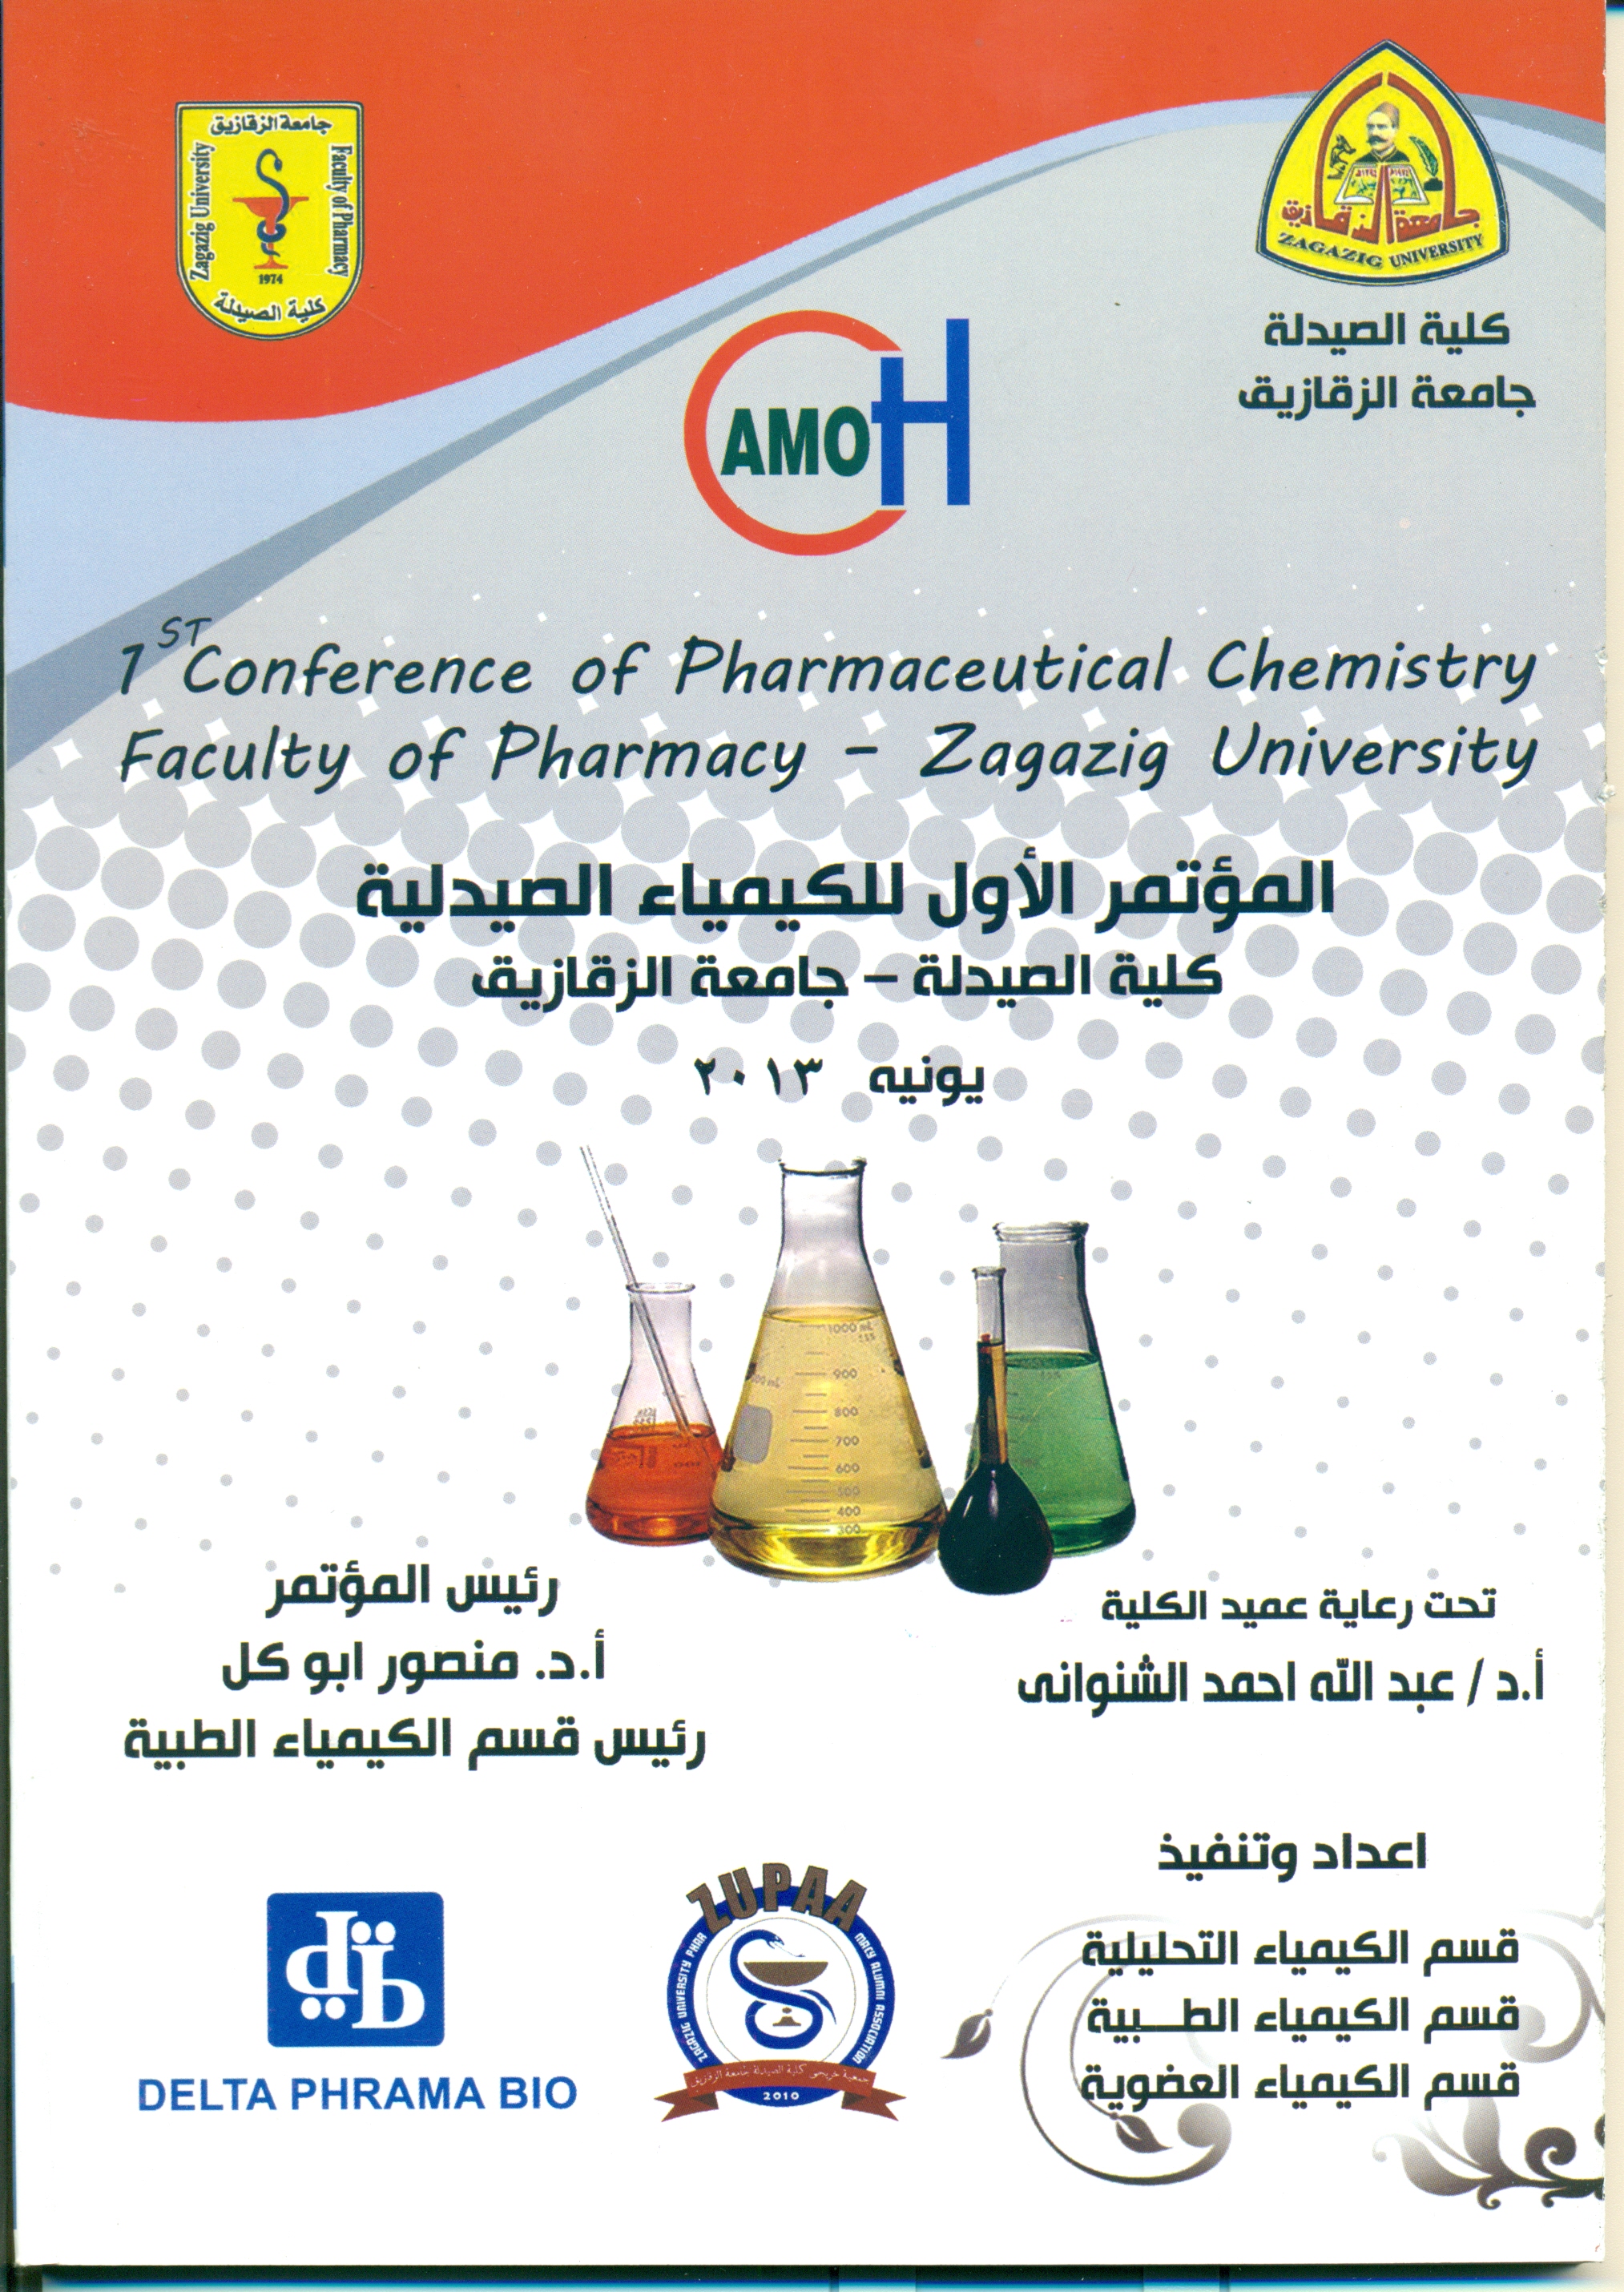 دعوة لحضور المؤتمر الأول للكيمياء الصيدلية الطبية